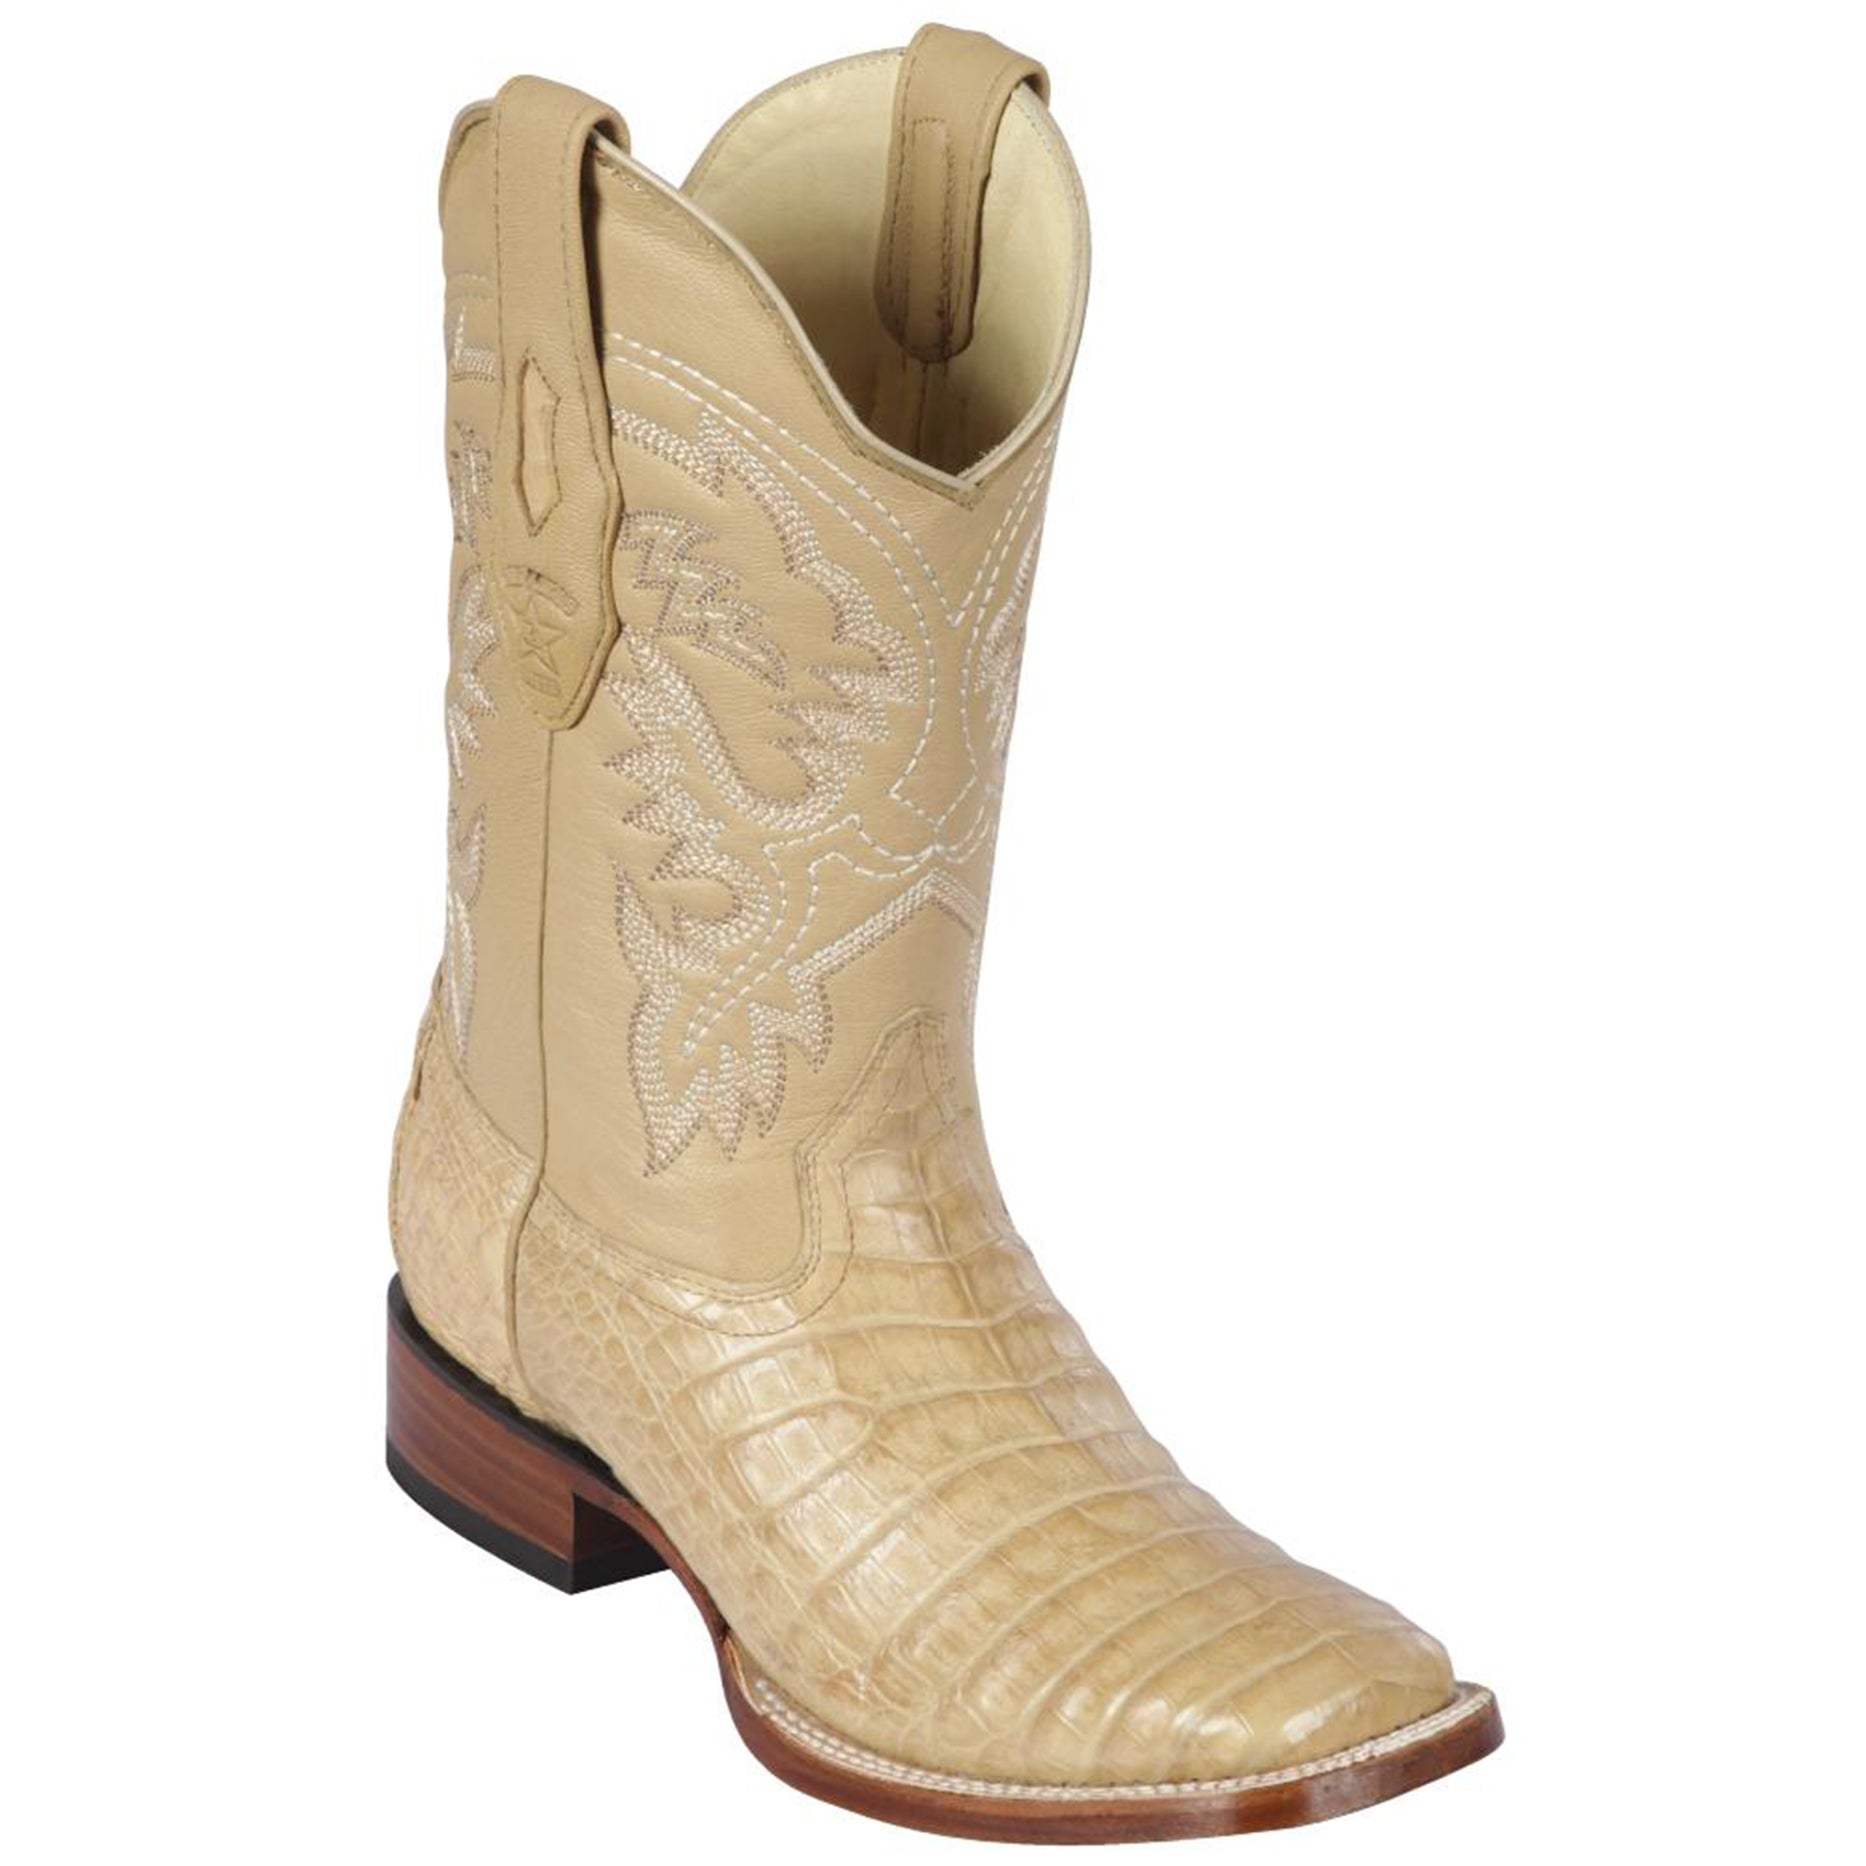 Los Altos Oryx Caiman Square Toe Cowboy Boots